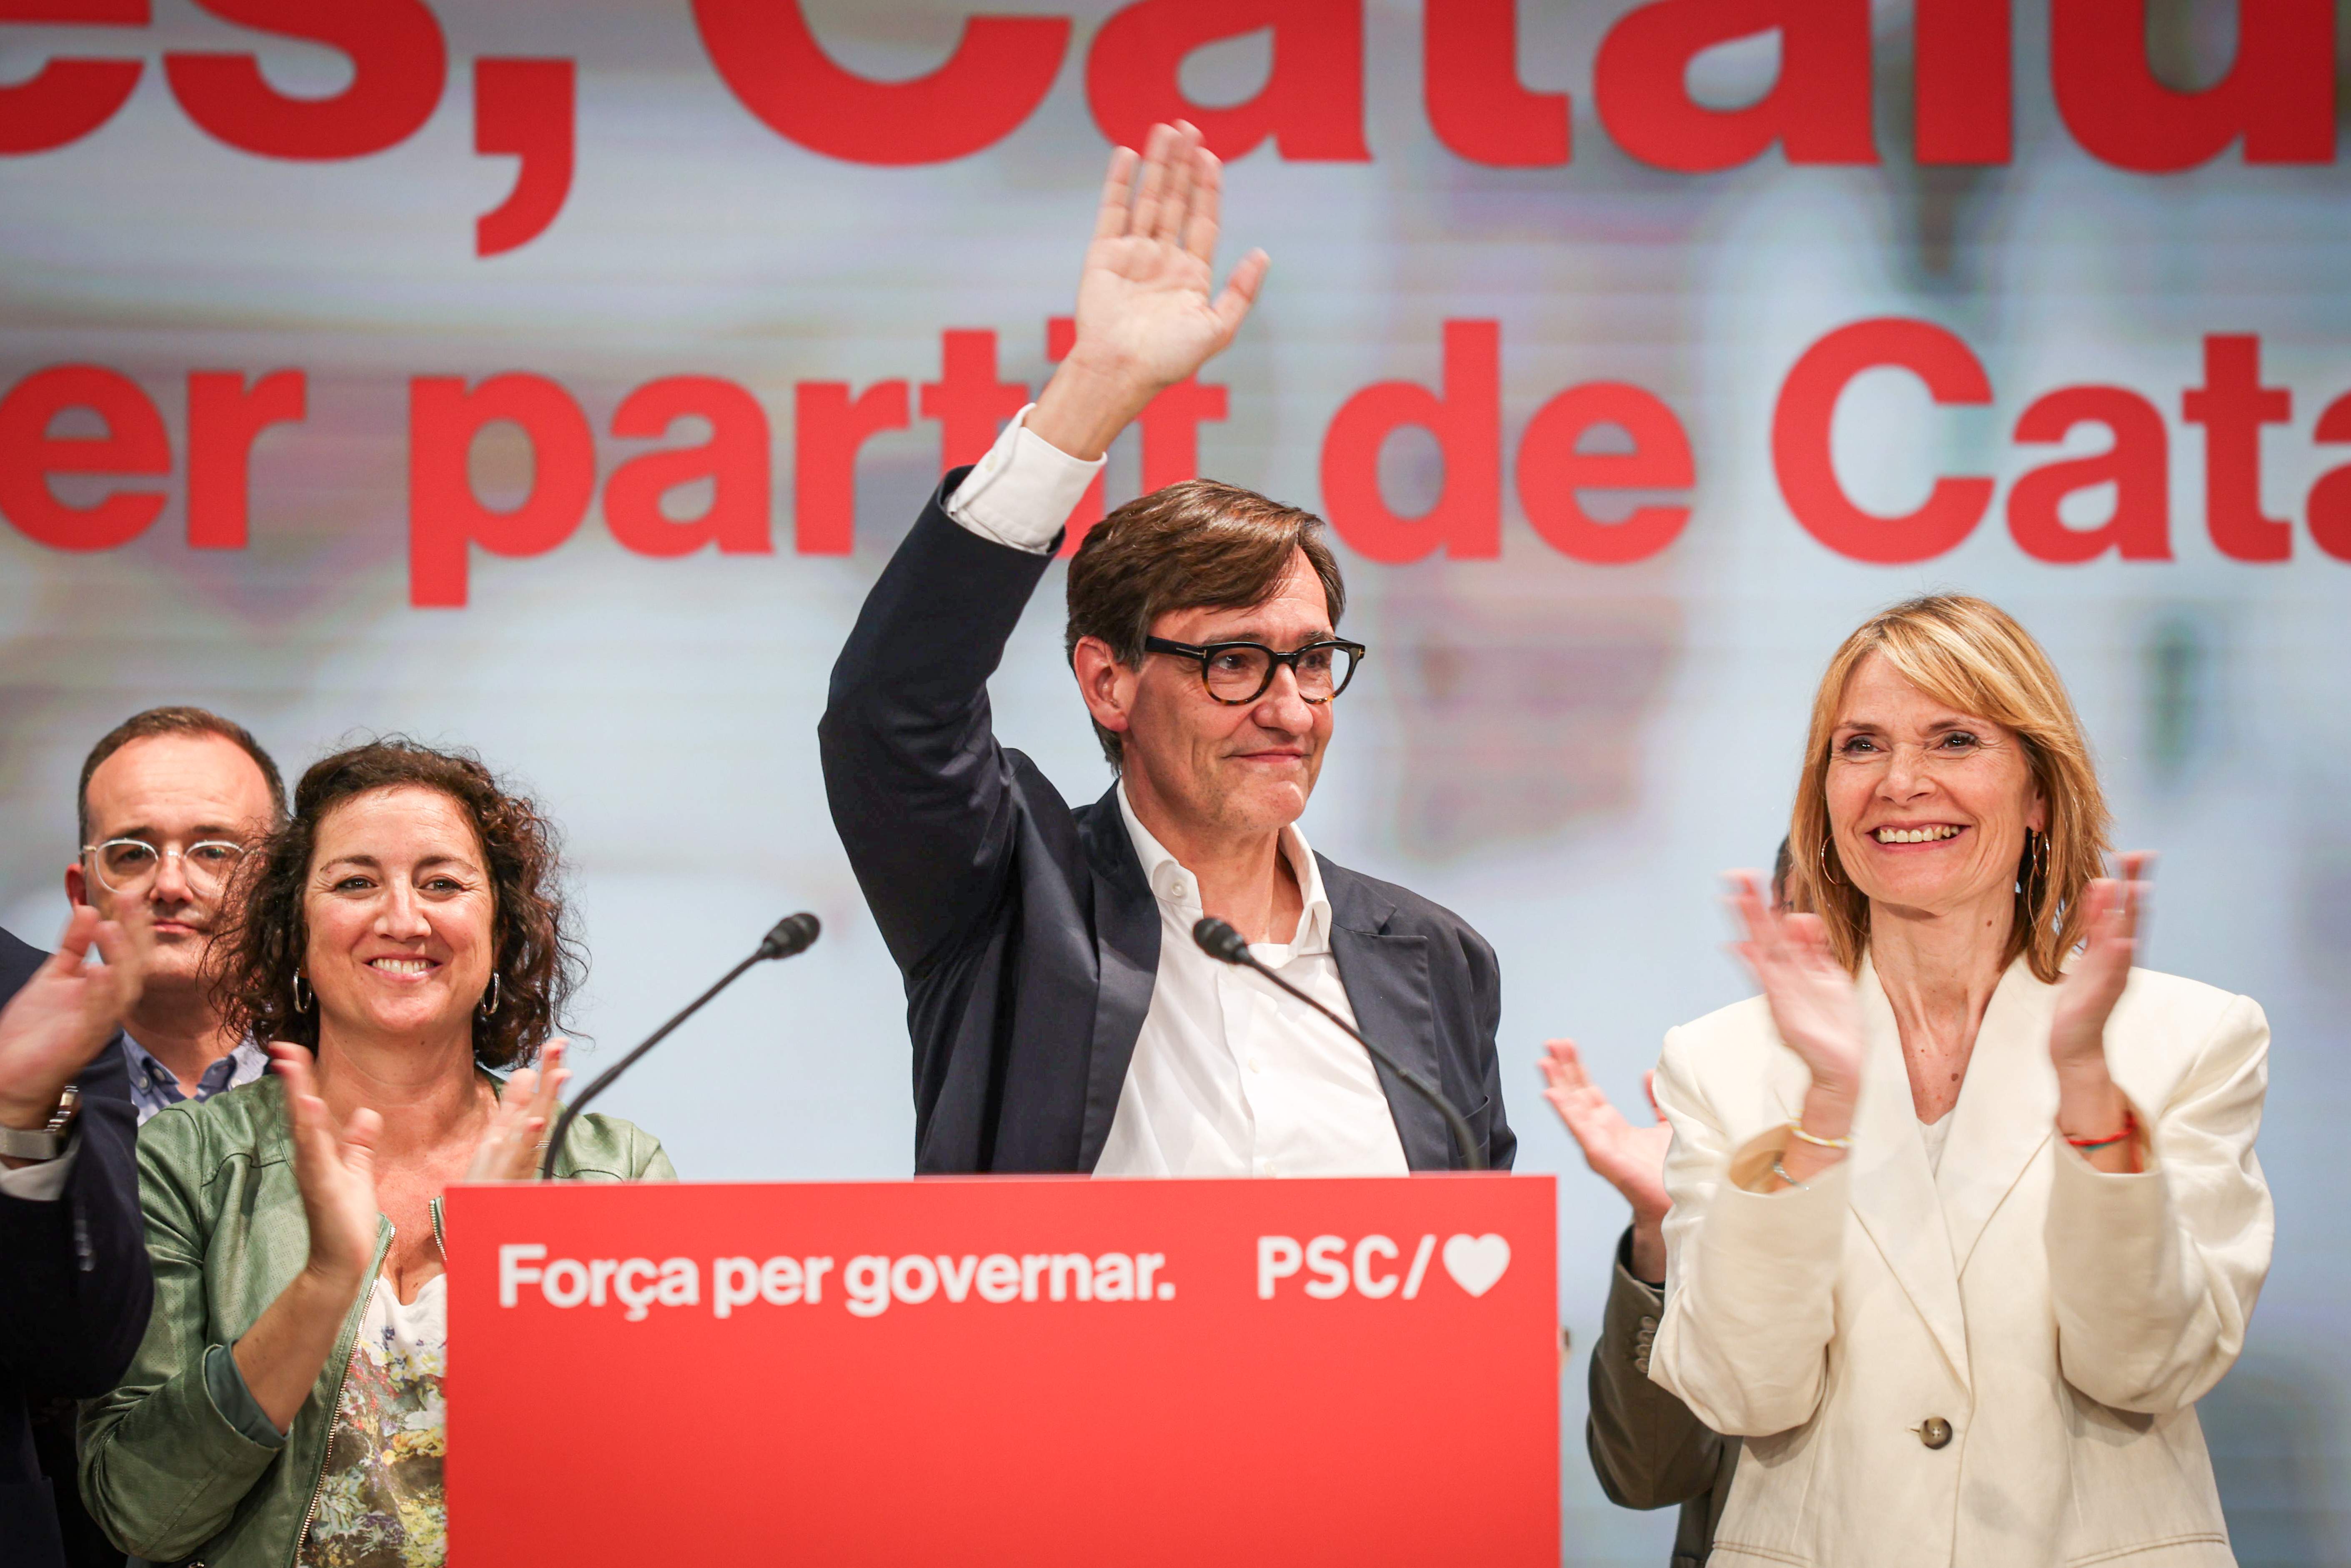 Illa es proposa per liderar "la nova etapa que Catalunya" ha obert amb la seva victòria